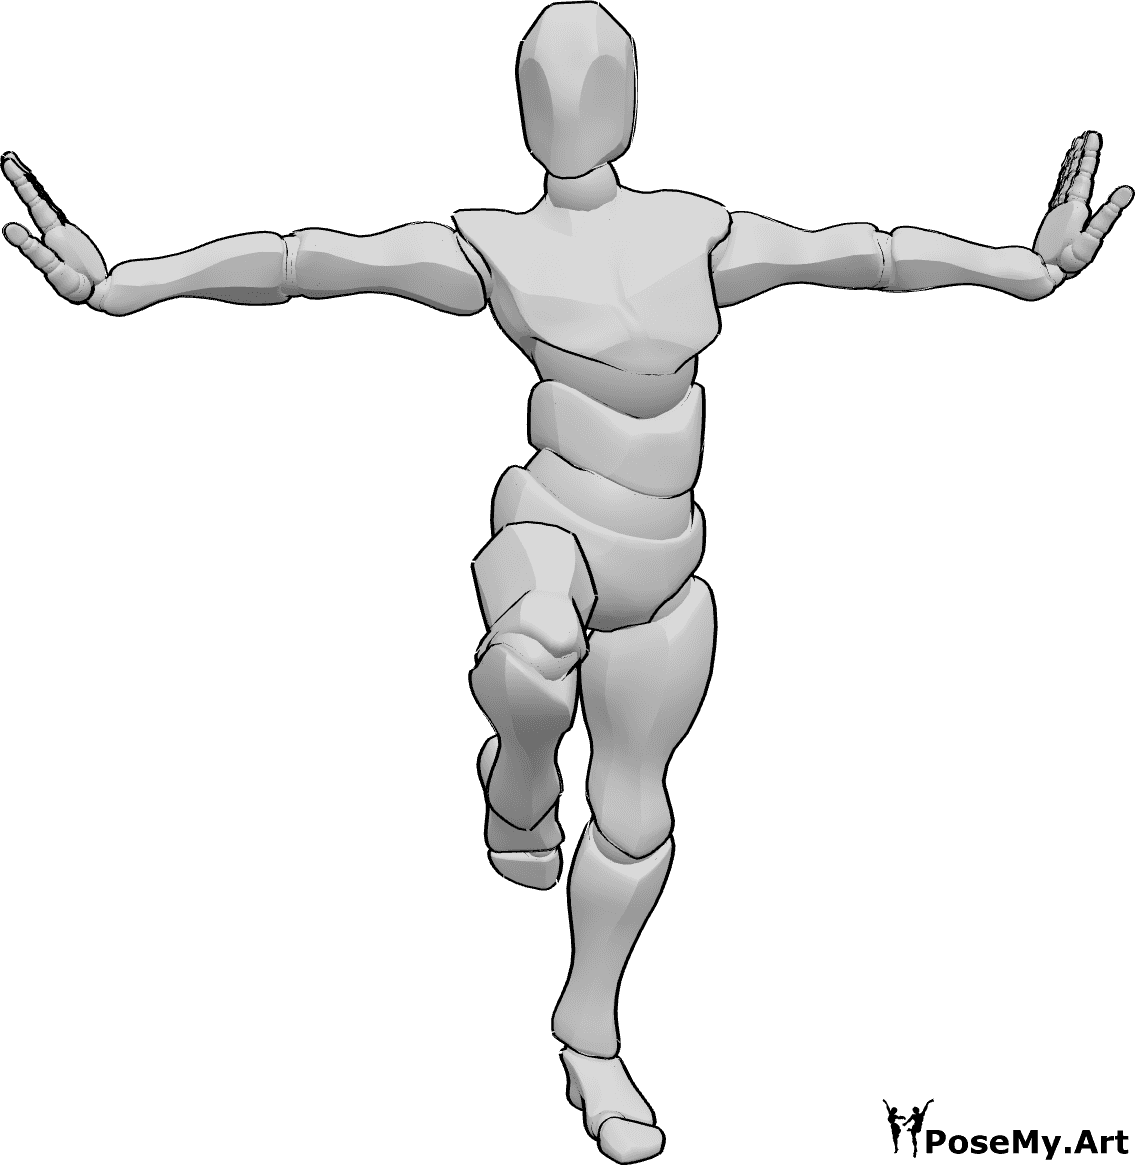 Référence des poses- Pose debout de la jambe gauche - Homme debout sur une jambe, pose kung fu